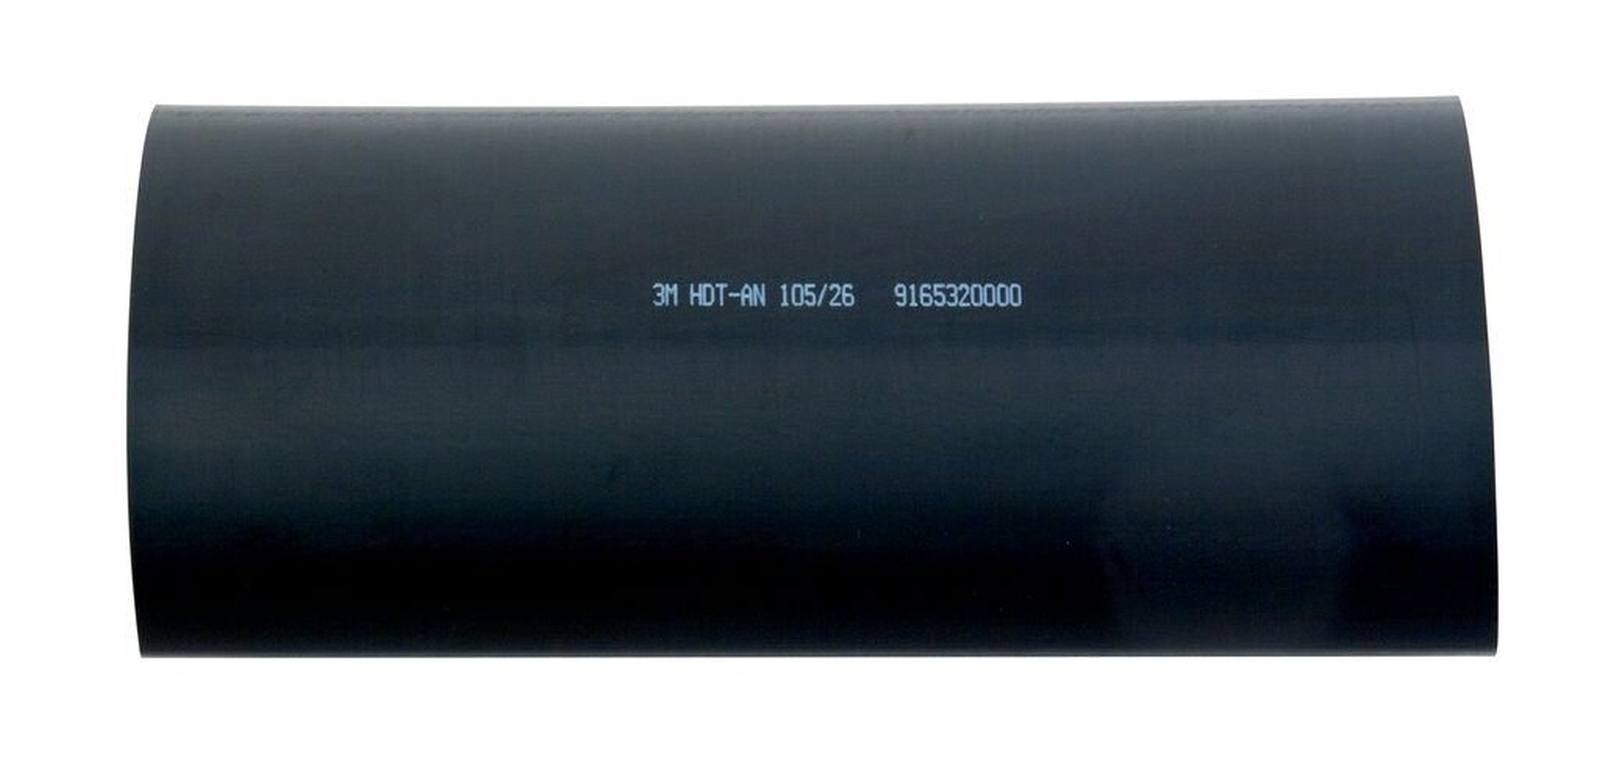 3M HDT-AN Tubo termorestringente a parete spessa con adesivo, nero, 105/26 mm, 1 m